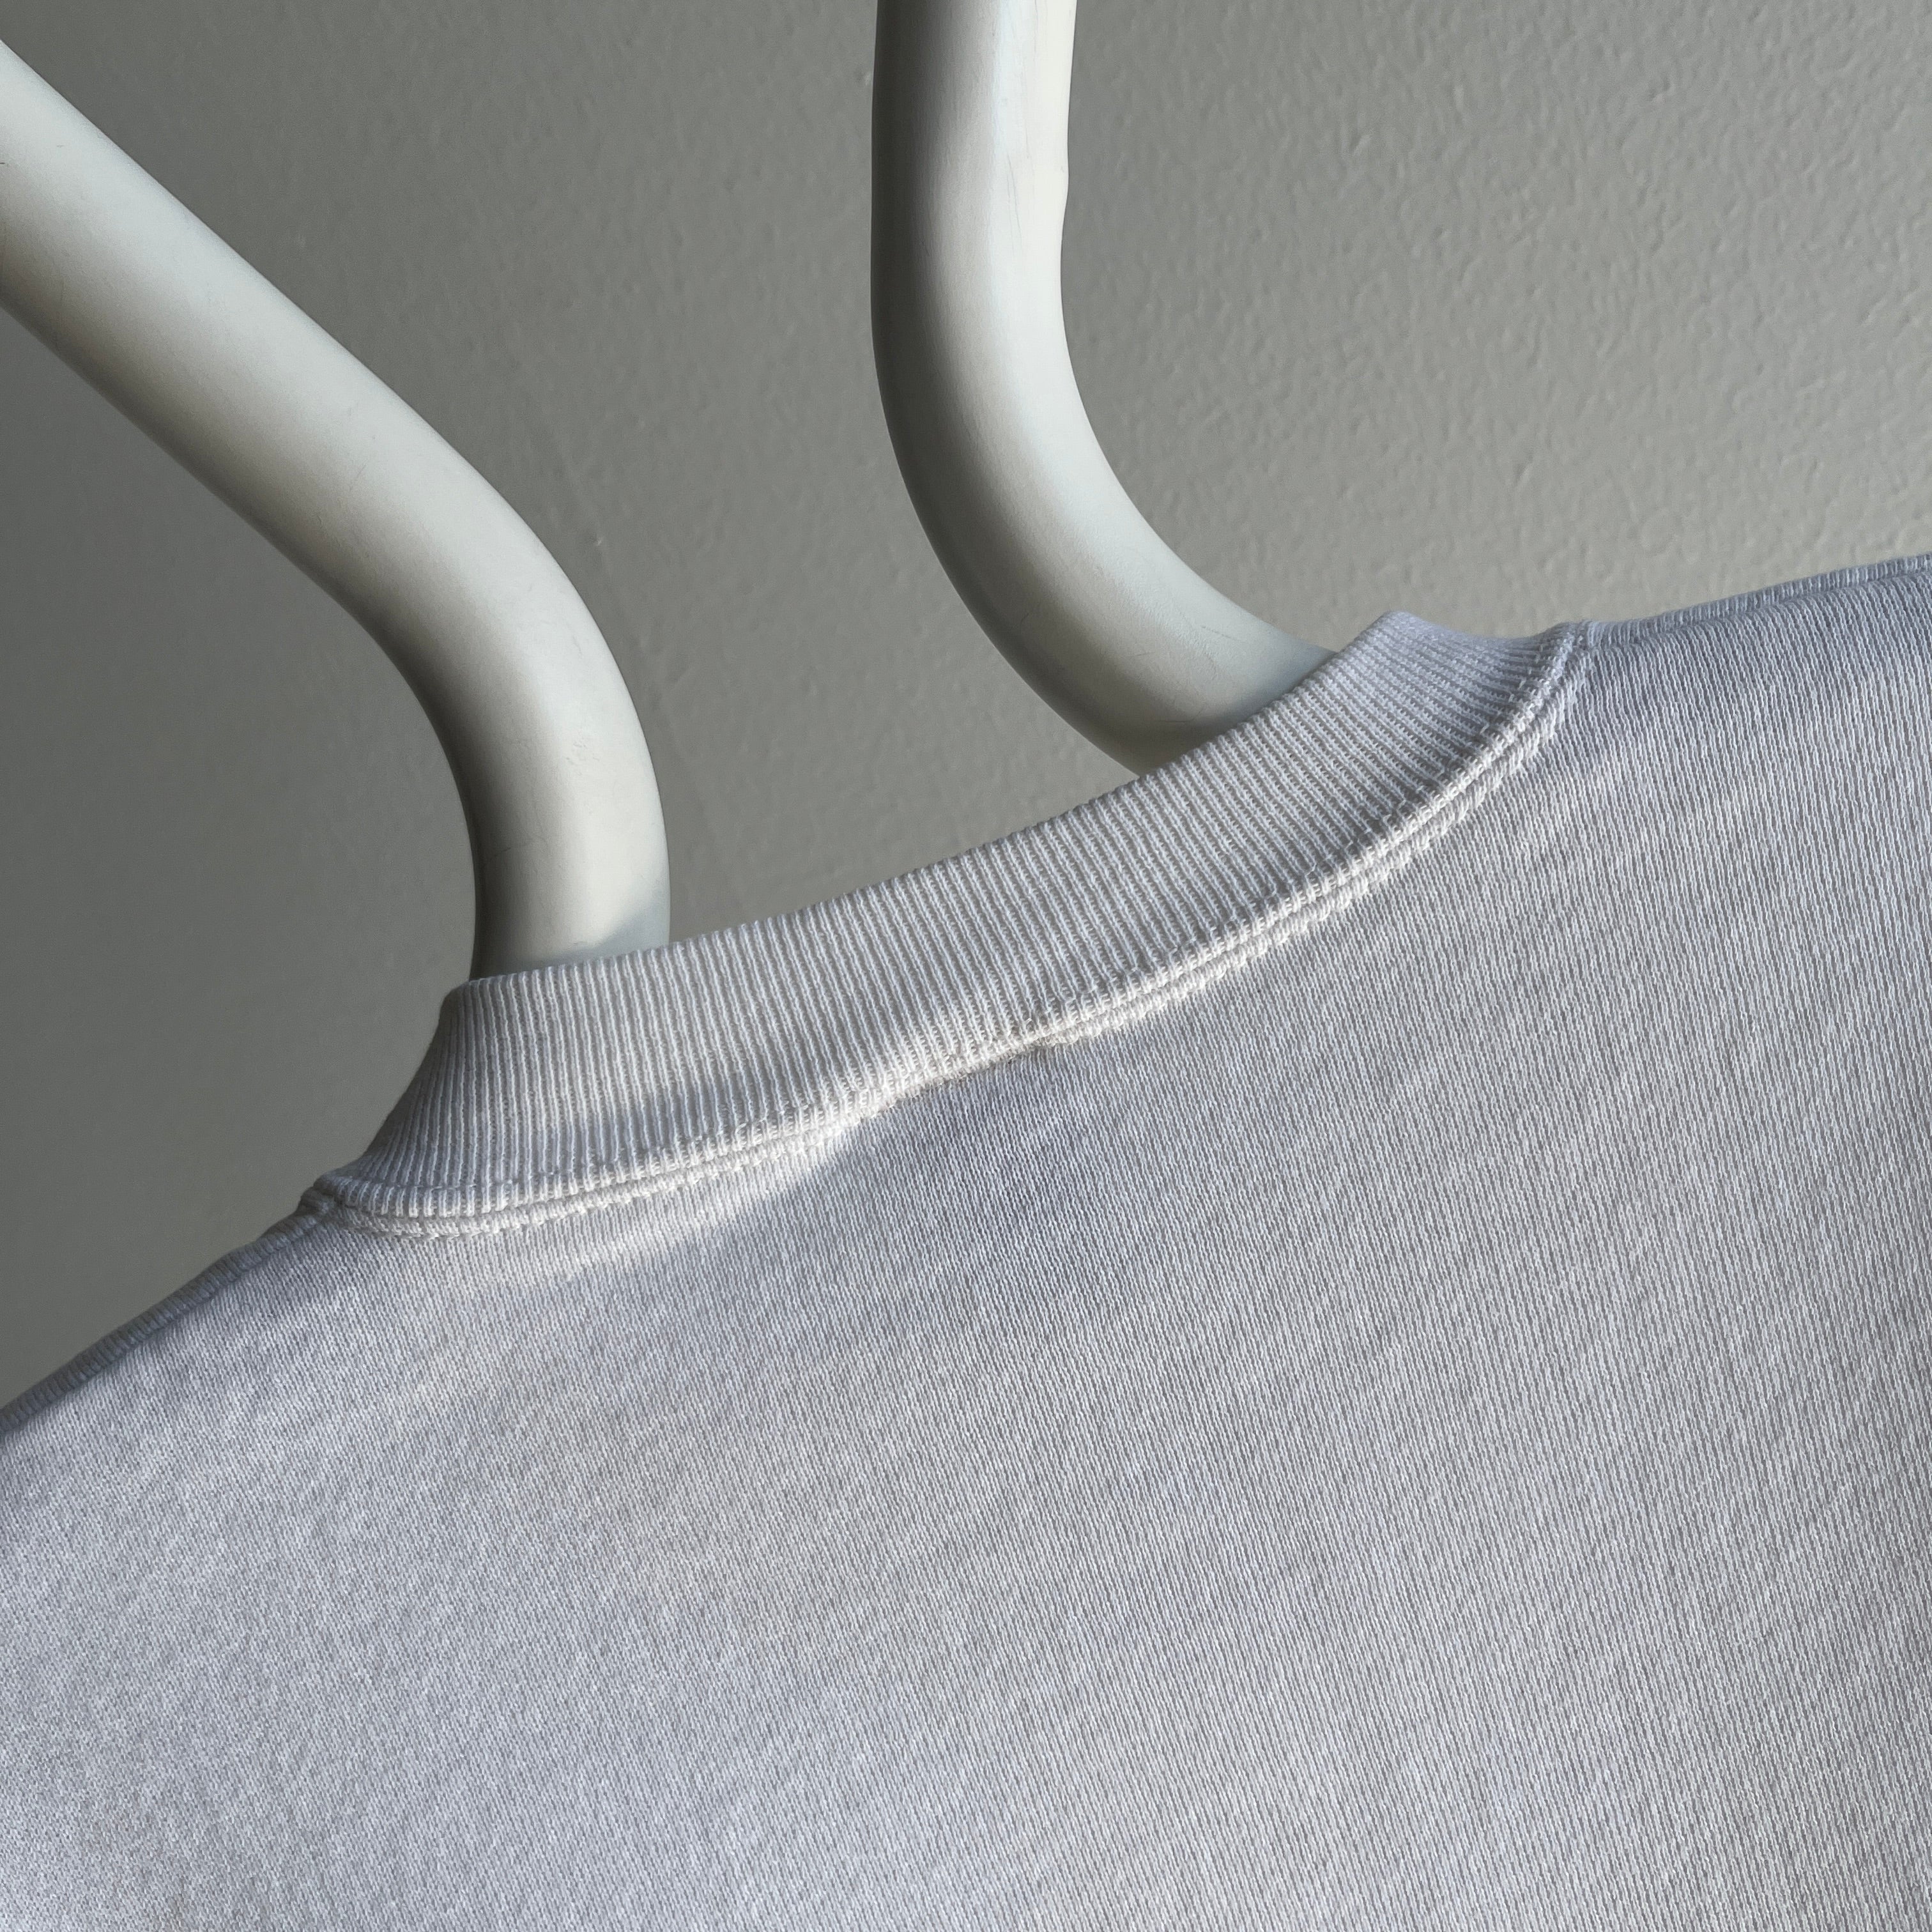 1980s Blank White Jerzees USA Made Sweatshirt - OMG